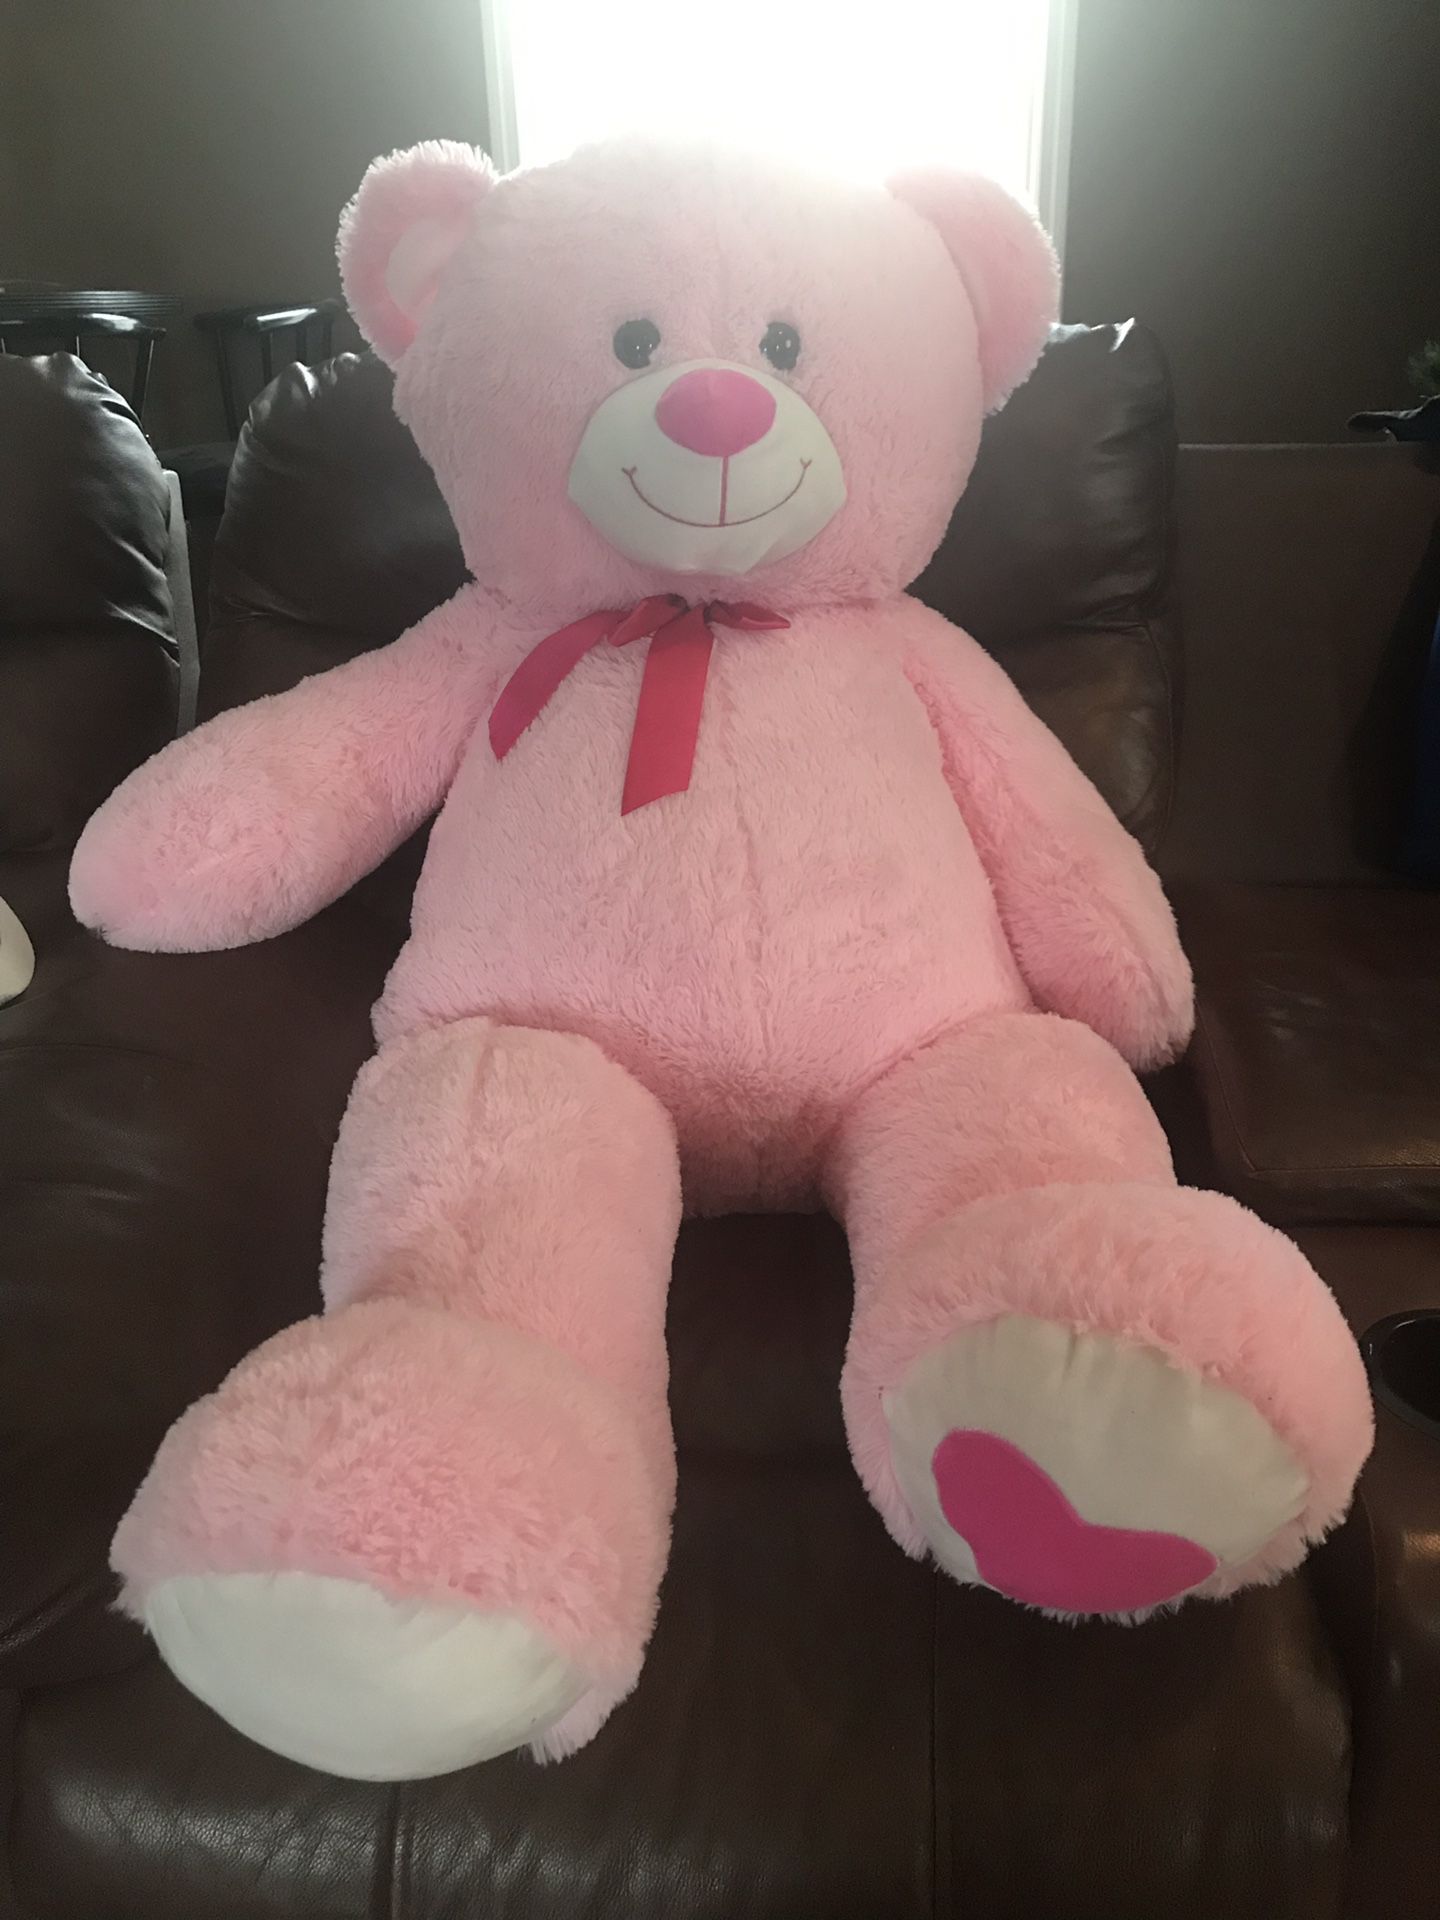 HUGE Stuffed Teddy Bear!